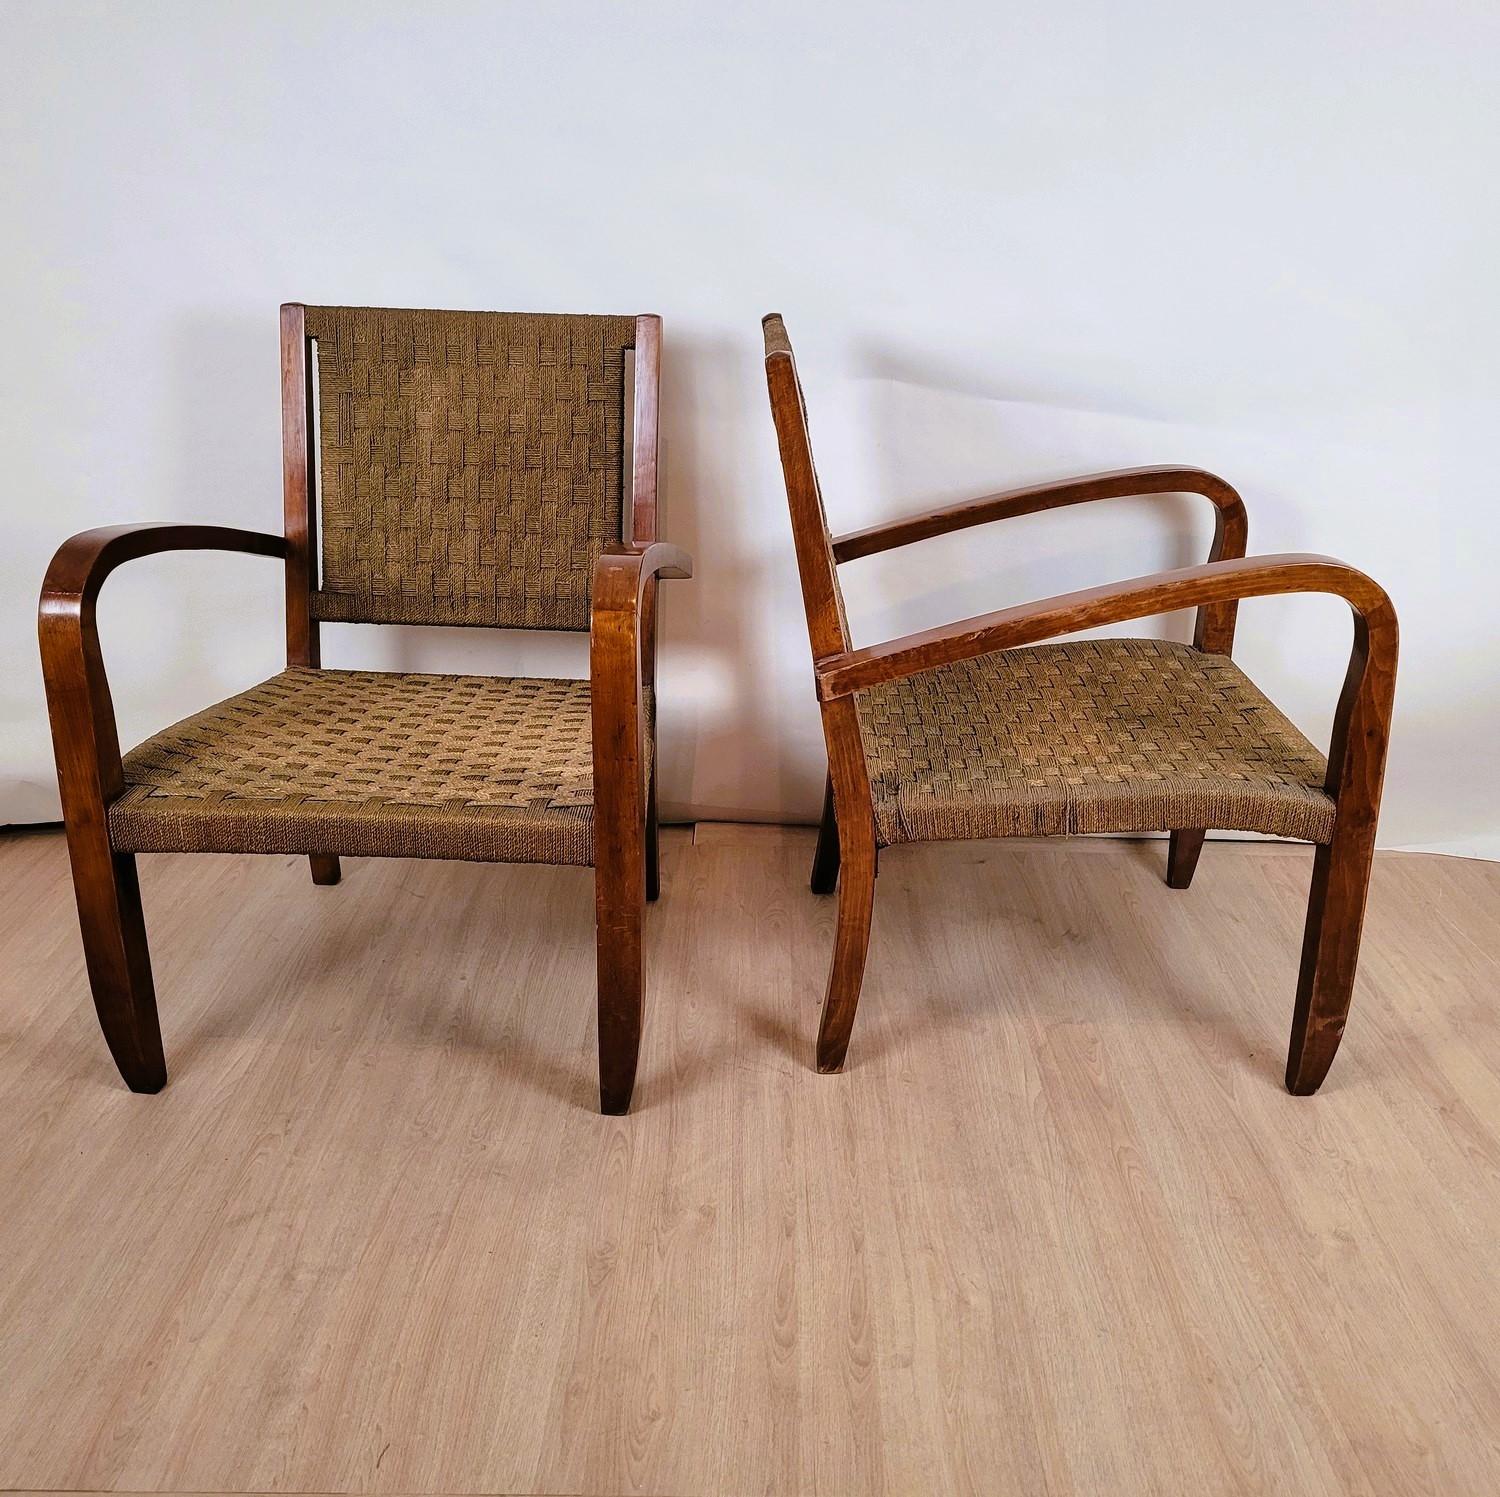 Paar Sessel aus getöntem Holz mit Sitz und Rückenlehne aus geflochtenem Seil

Sessel, die Erick Dieckmann, einem Bauhaus-Designer, zugeschrieben werden
Um 1930

Abnutzung und Verschleiß, einige Seile müssen überprüft werden

Höhe 85cm Sitz 40cm
62.5